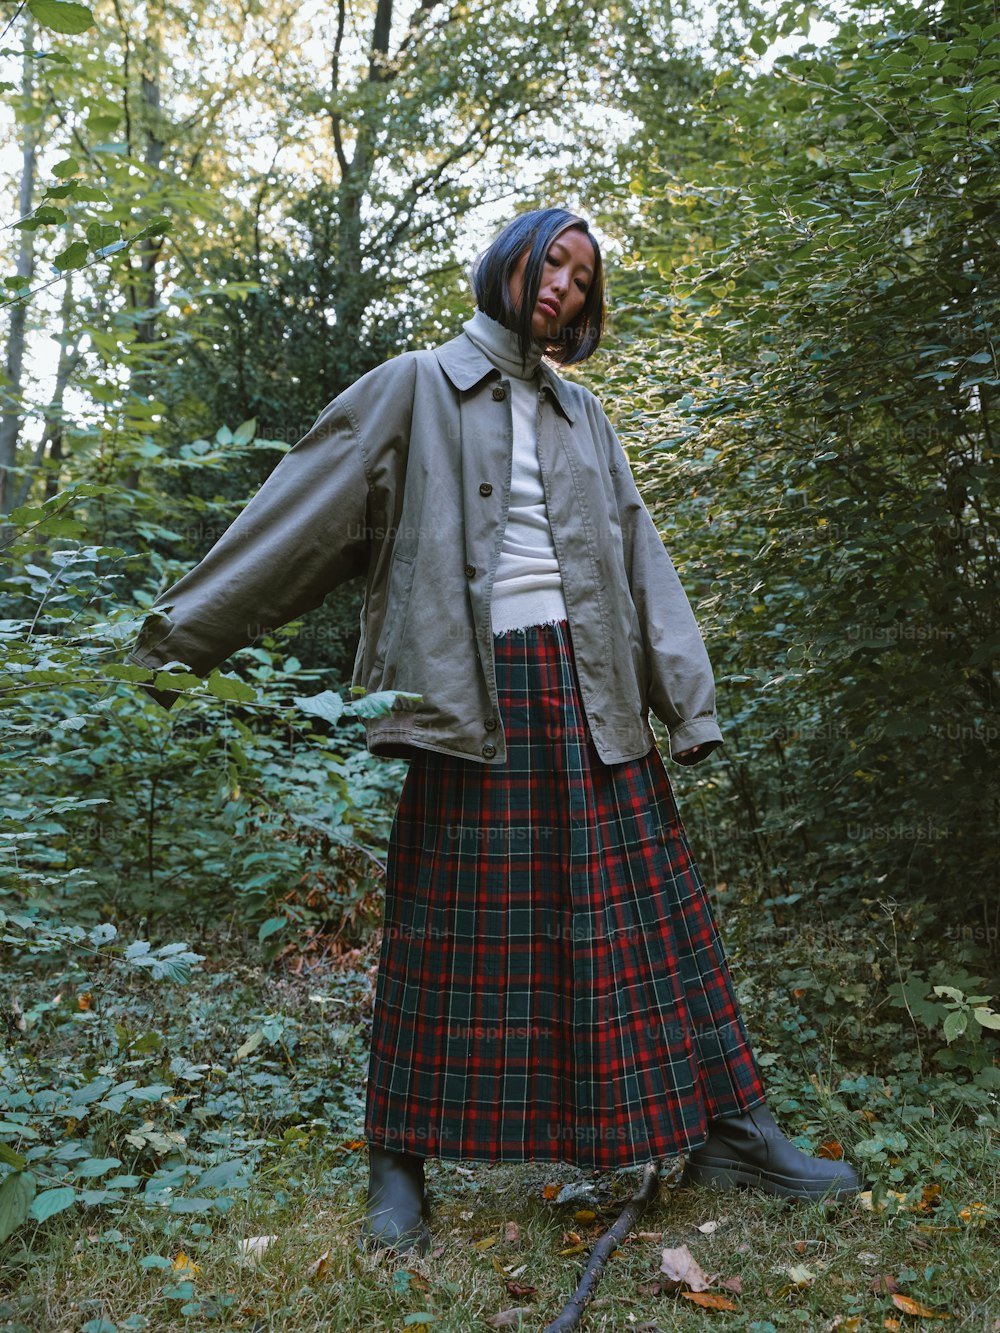 Une femme debout dans les bois vêtue d’une jupe et d’une veste